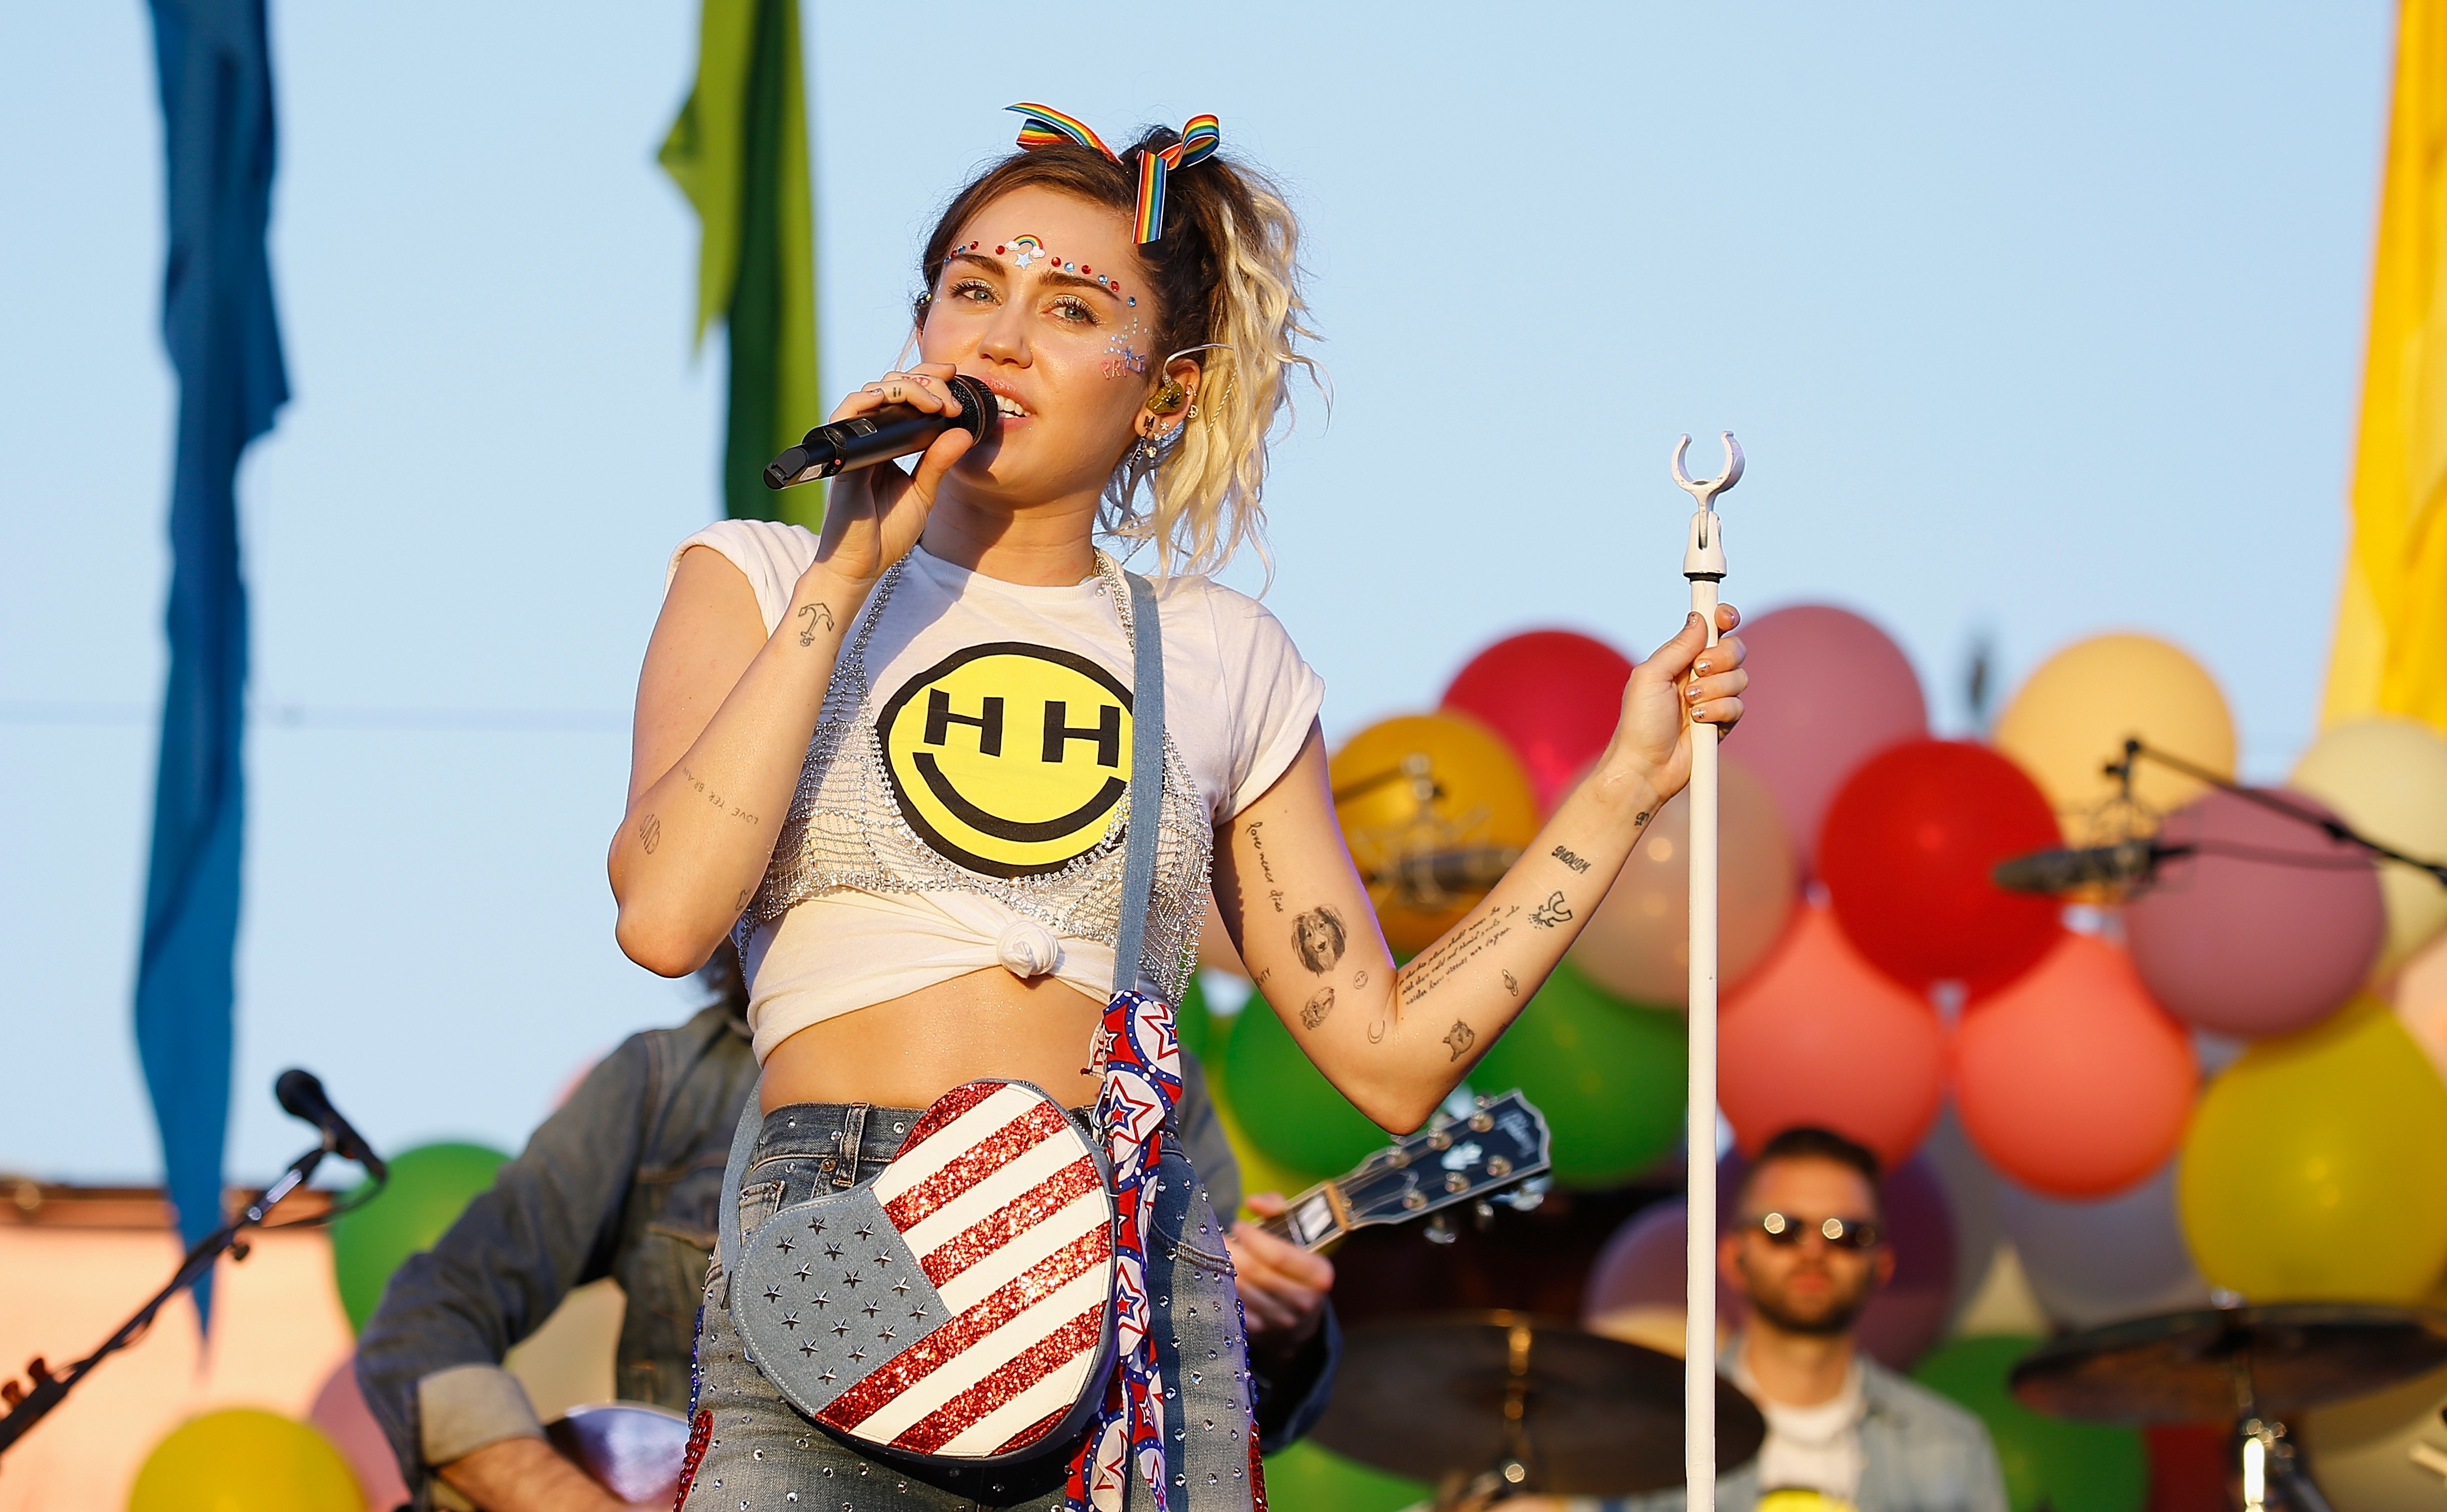 Miley Cyrus escreveu mensagem em apoio às vítimas da boate Pulse.